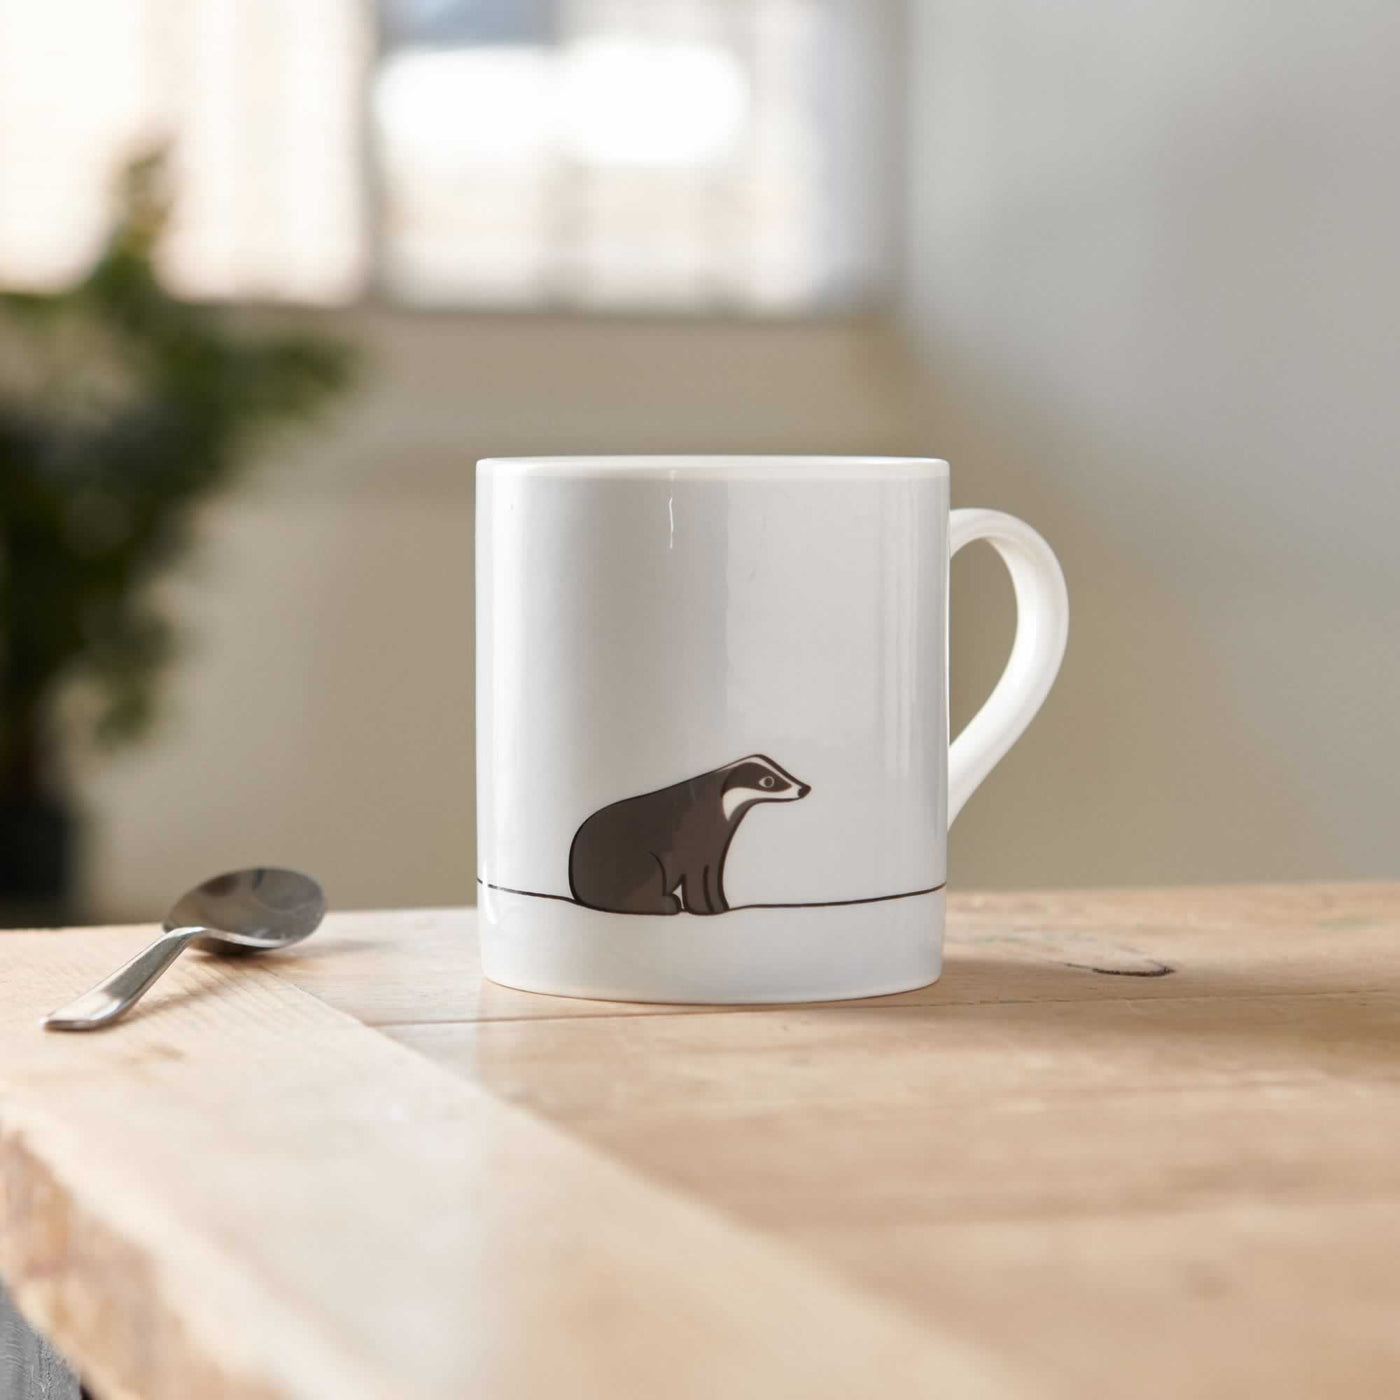 Badger Mug on table